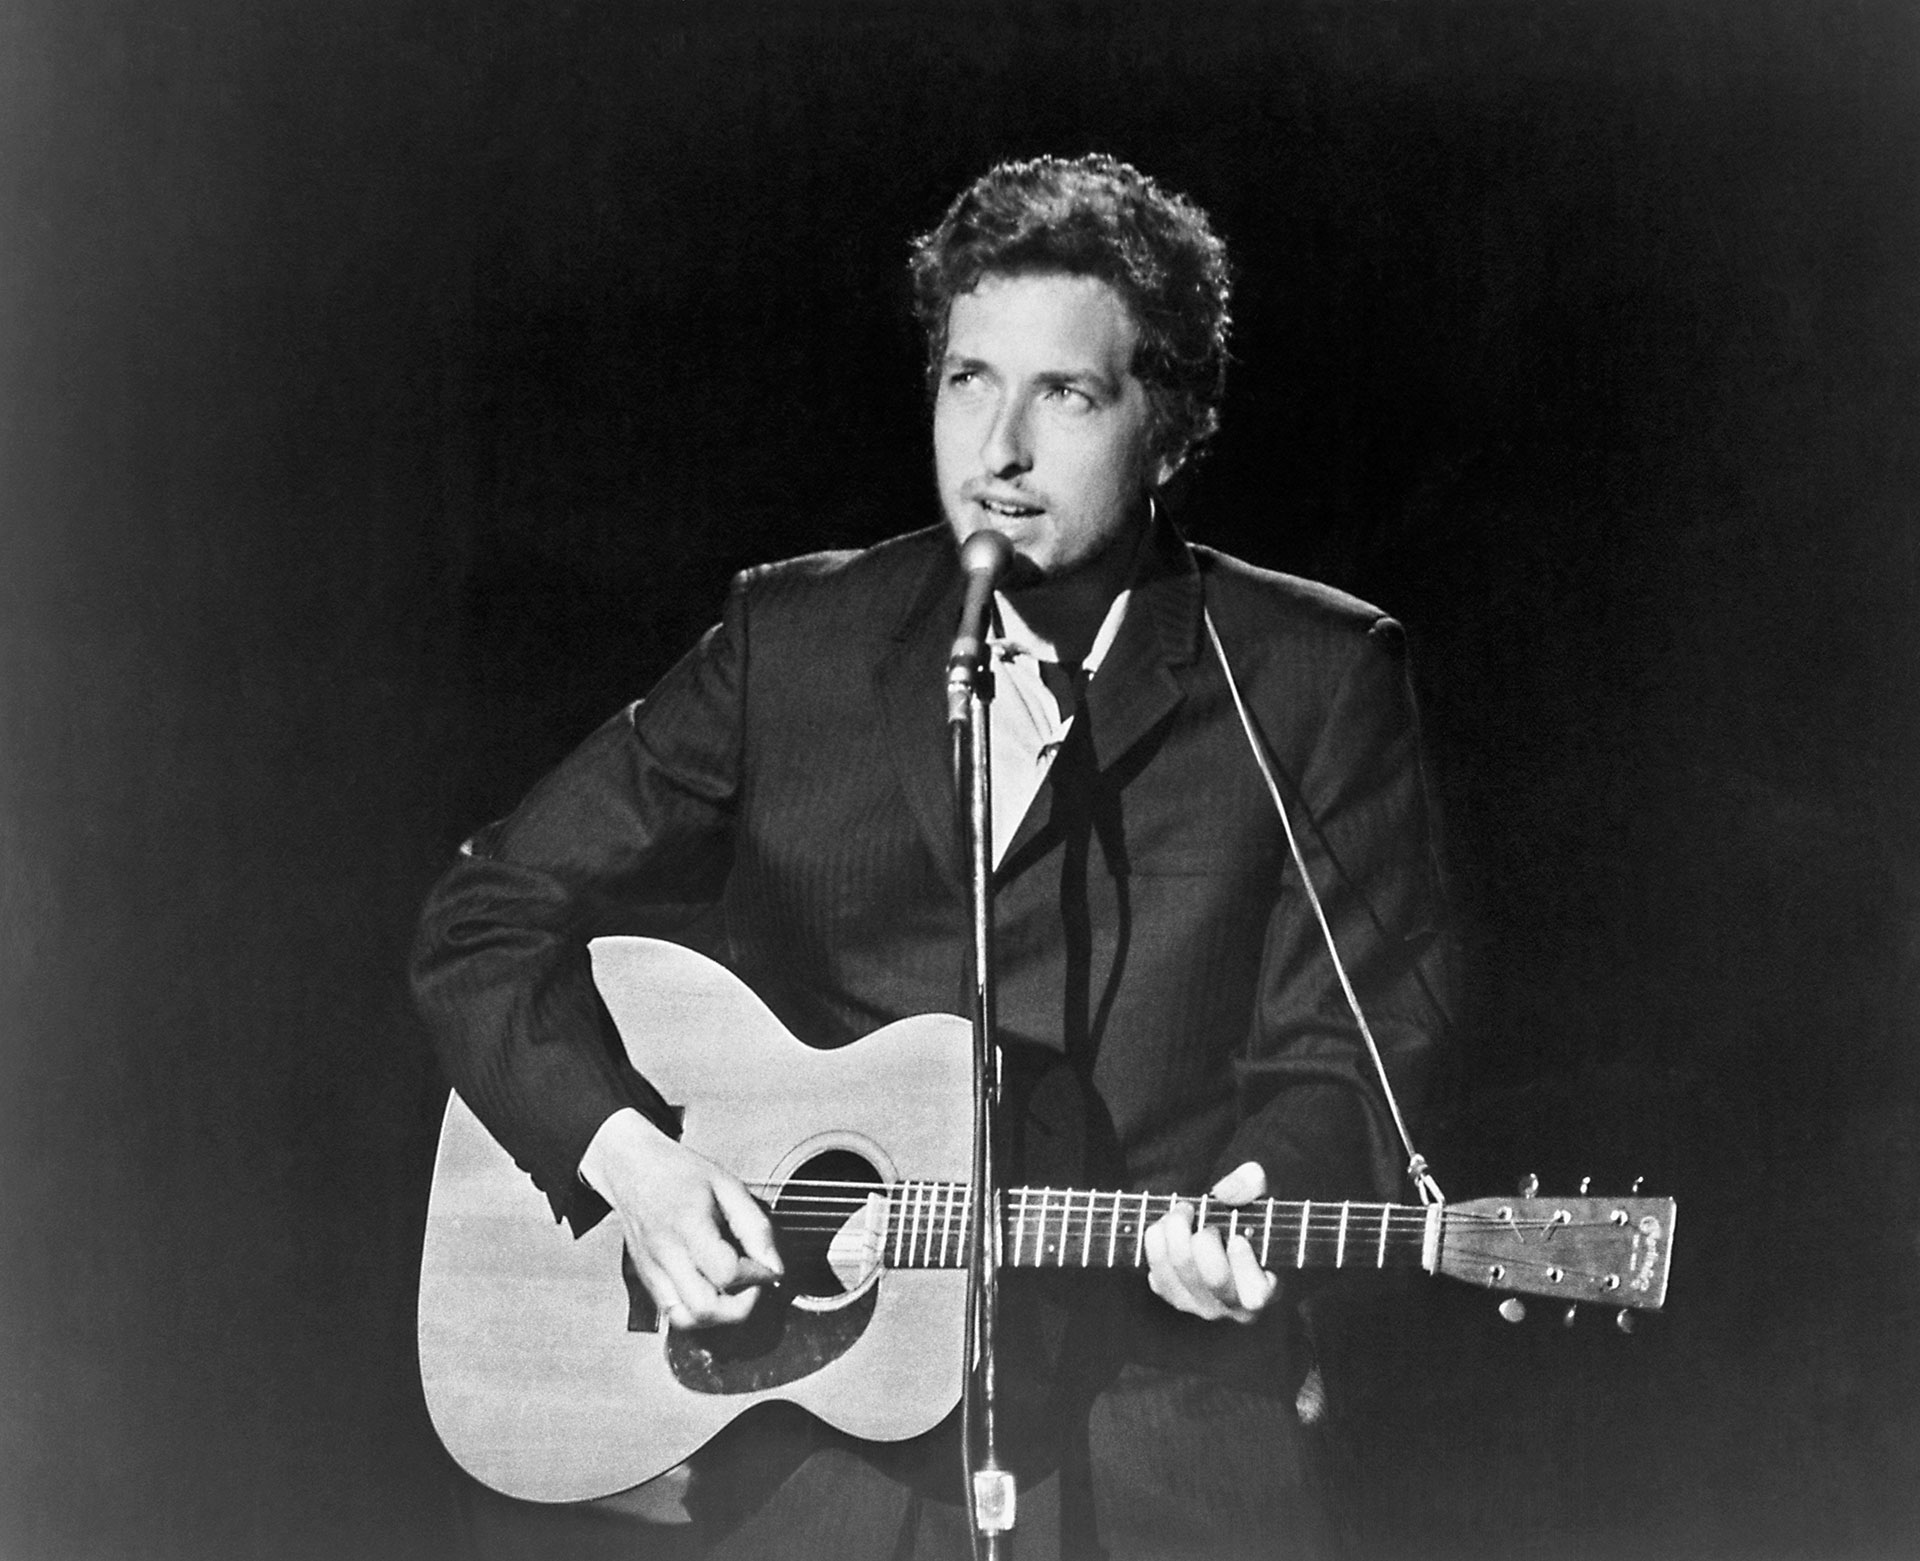 En su primer disco, Dylan solo grabó dos temas de su autoría. El resto eran versiones del clásico repertorio de folk, country y blues (Getty Images)